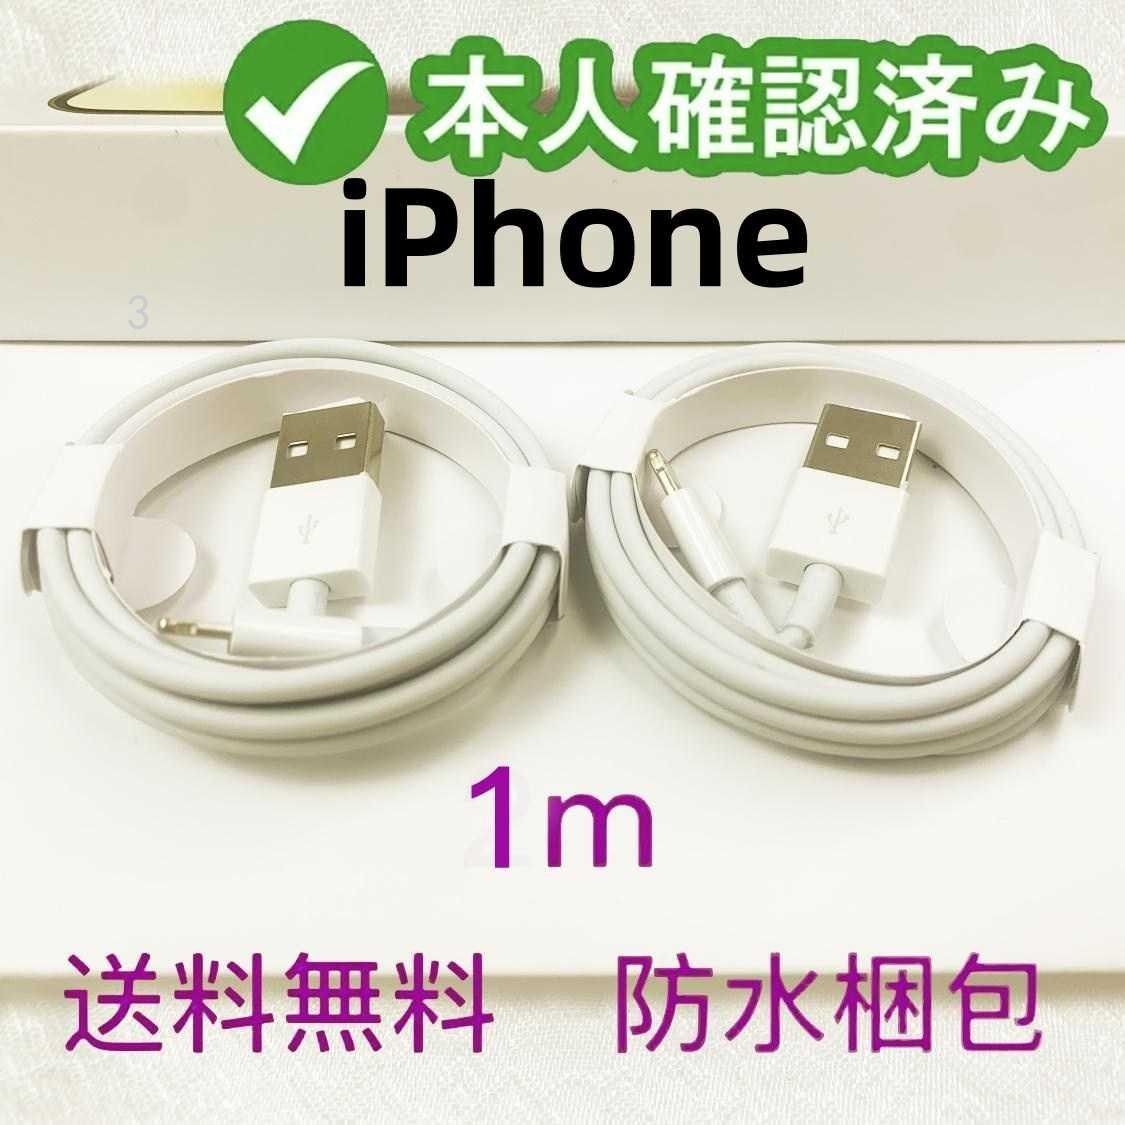 2本1m iPhone 充電器 充電ケーブル アイフォンケーブル 白 品質